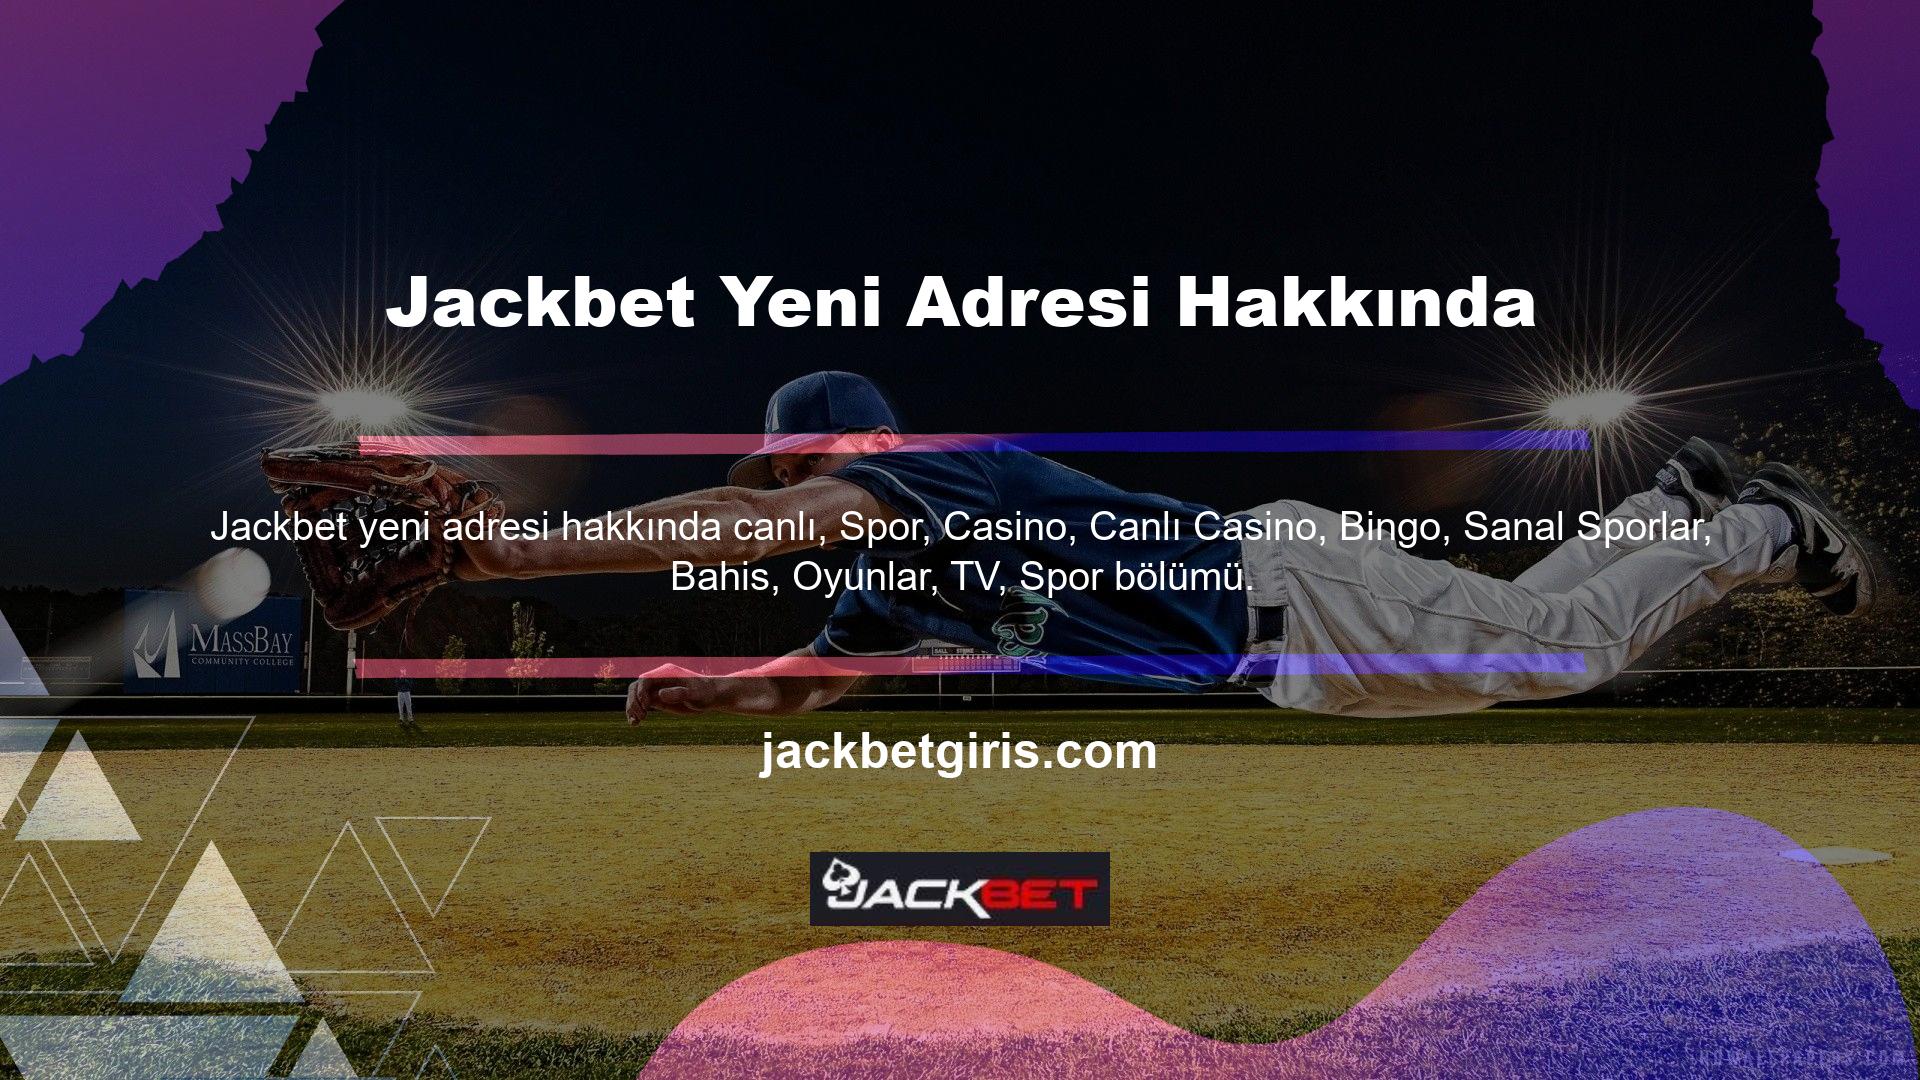 Sitede ayrıca maçları canlı izleyebileceğiniz "Jackbet" adında yeni bir adres bölümü de yer alıyor